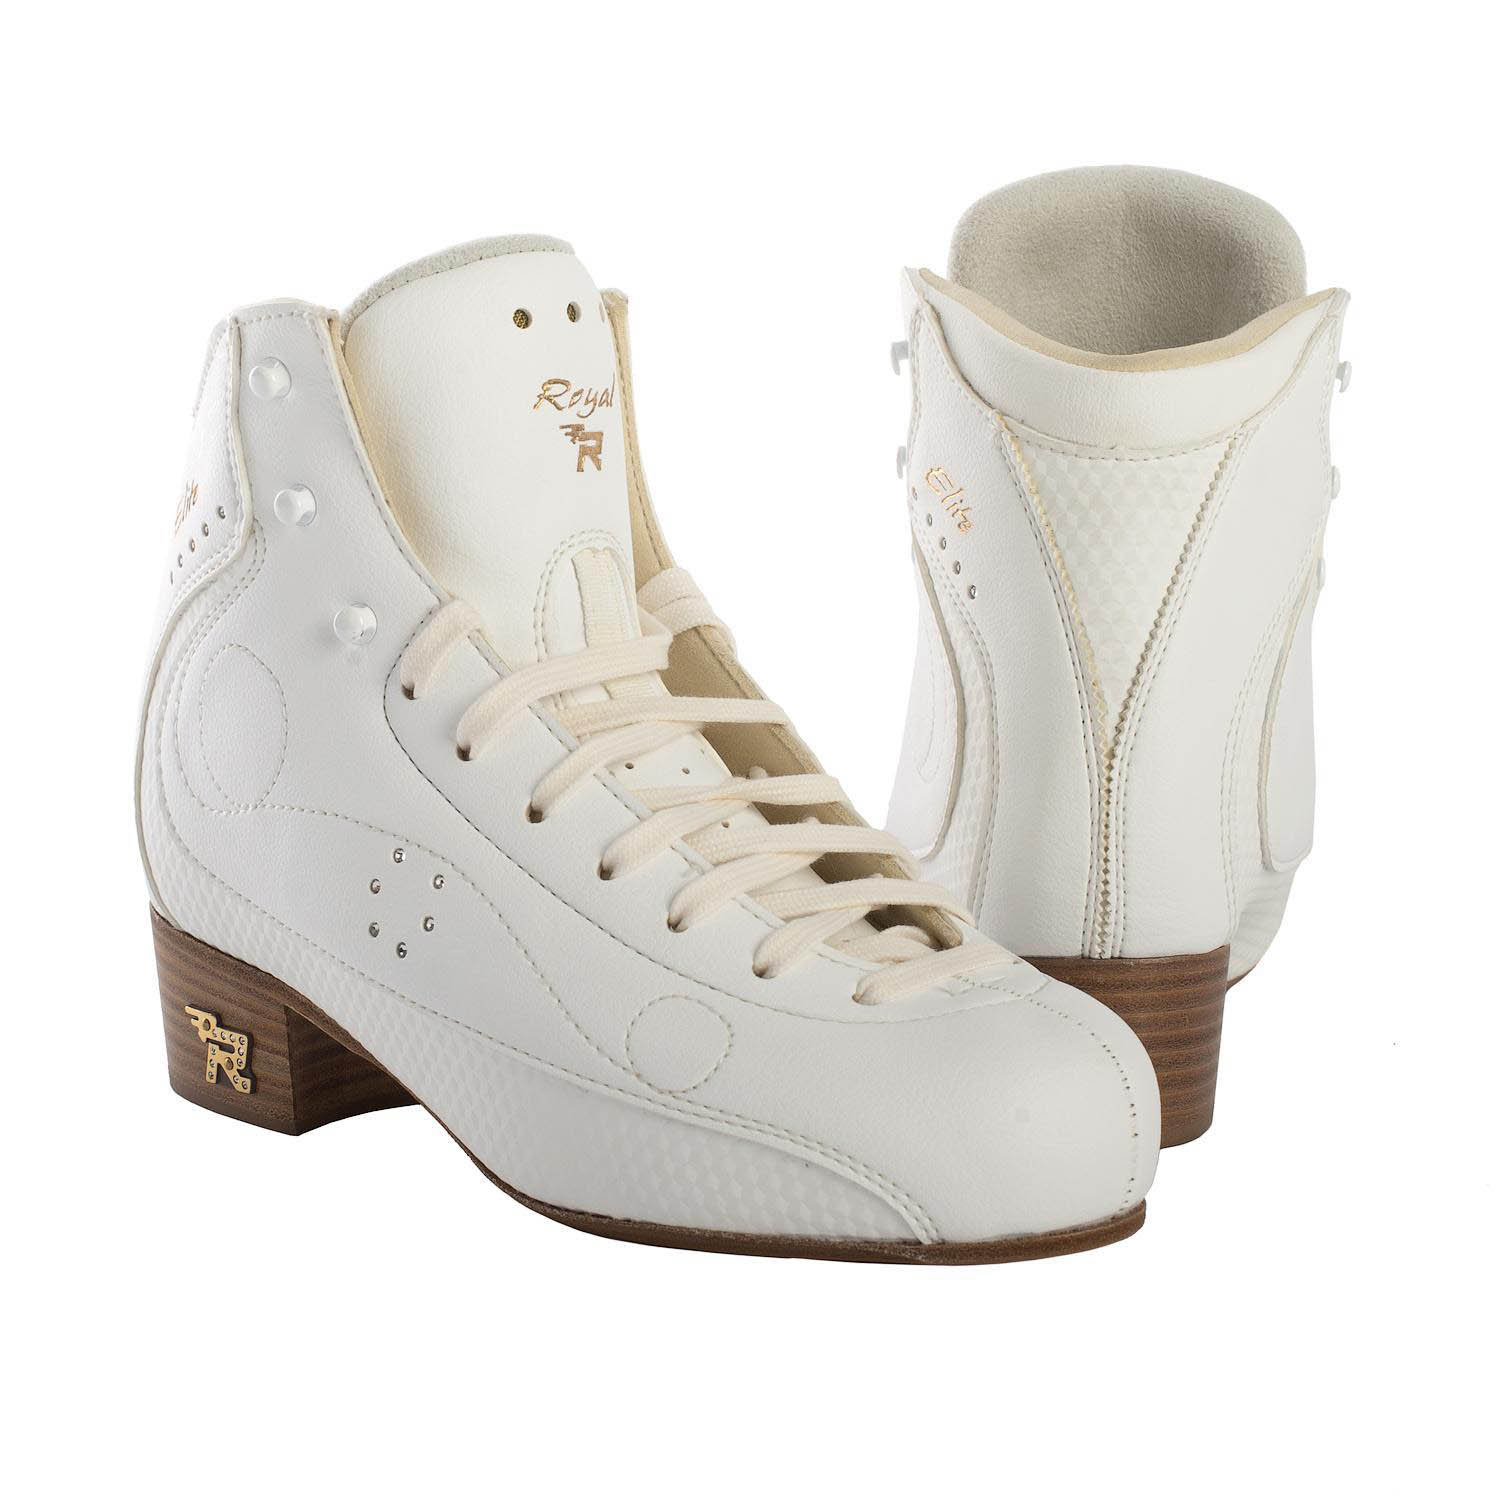 Фигурные ботинки Risport Royal Elite (Белые) от интернет магазина  ТДФК-ЮГ-ТВИЗЛ